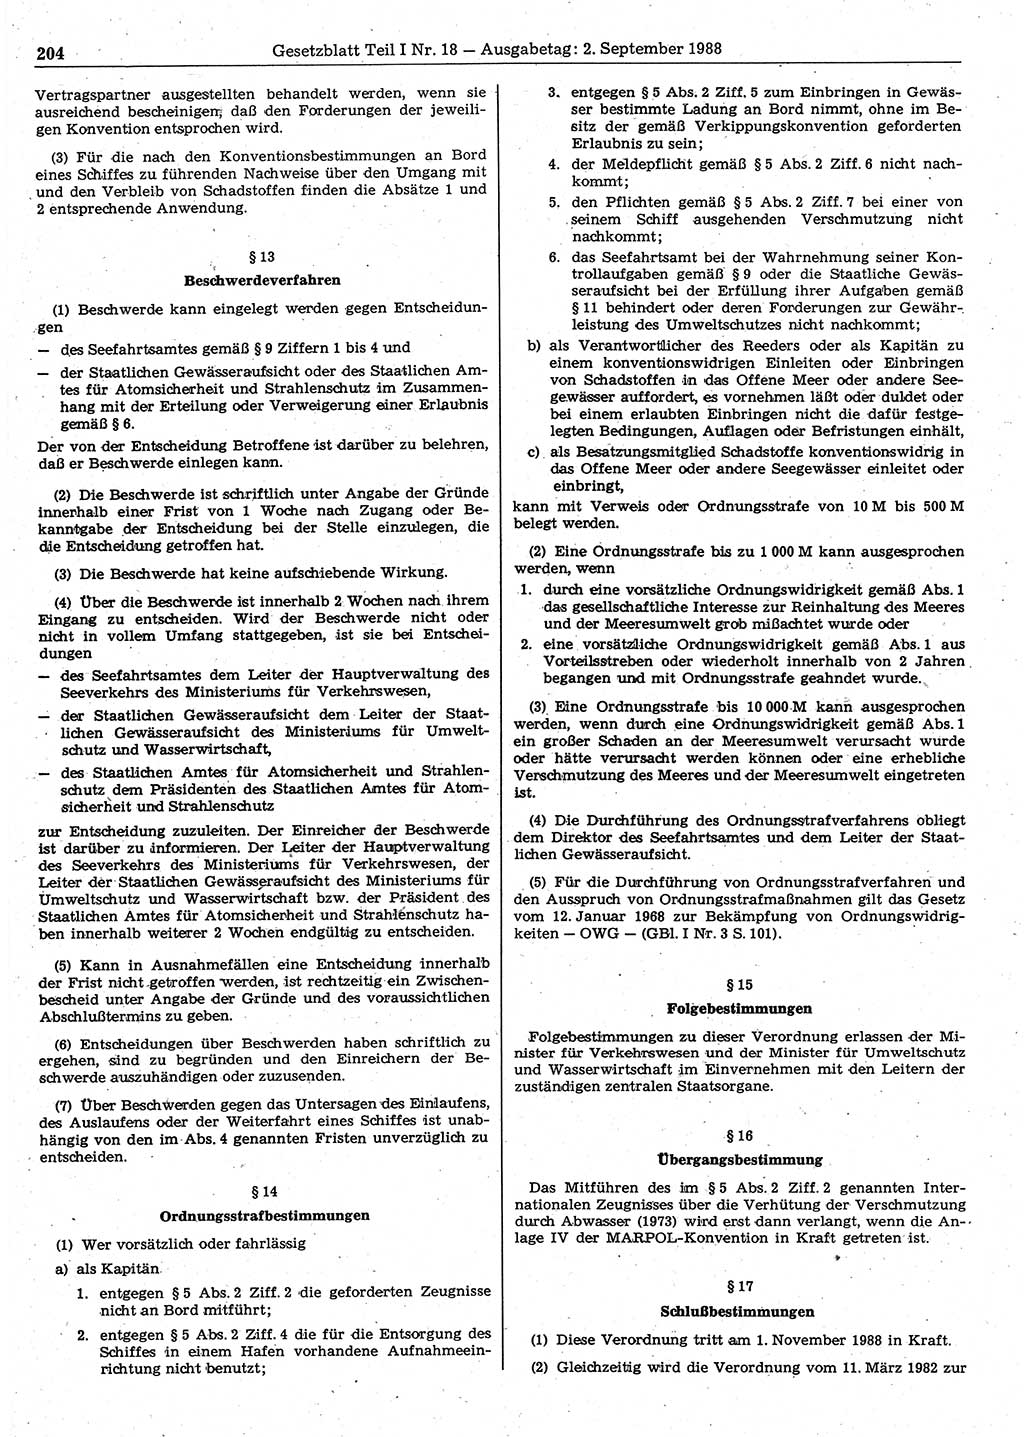 Gesetzblatt (GBl.) der Deutschen Demokratischen Republik (DDR) Teil Ⅰ 1988, Seite 204 (GBl. DDR Ⅰ 1988, S. 204)